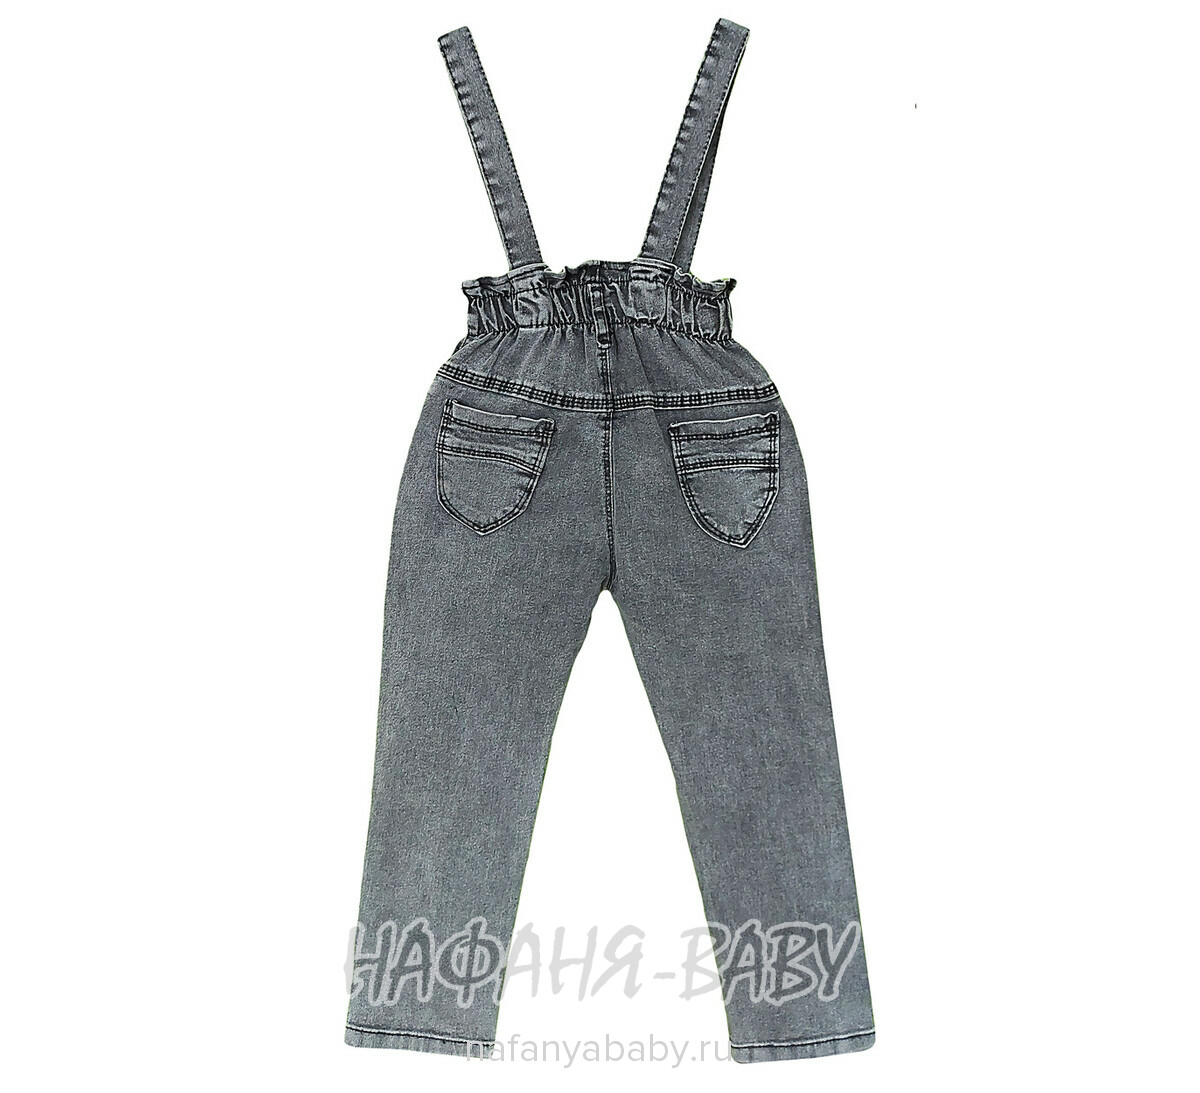 Подростковые джинсы TATI Jeans арт: 9602 для девочки от 8 до 12 лет, цвет черный, оптом Турция